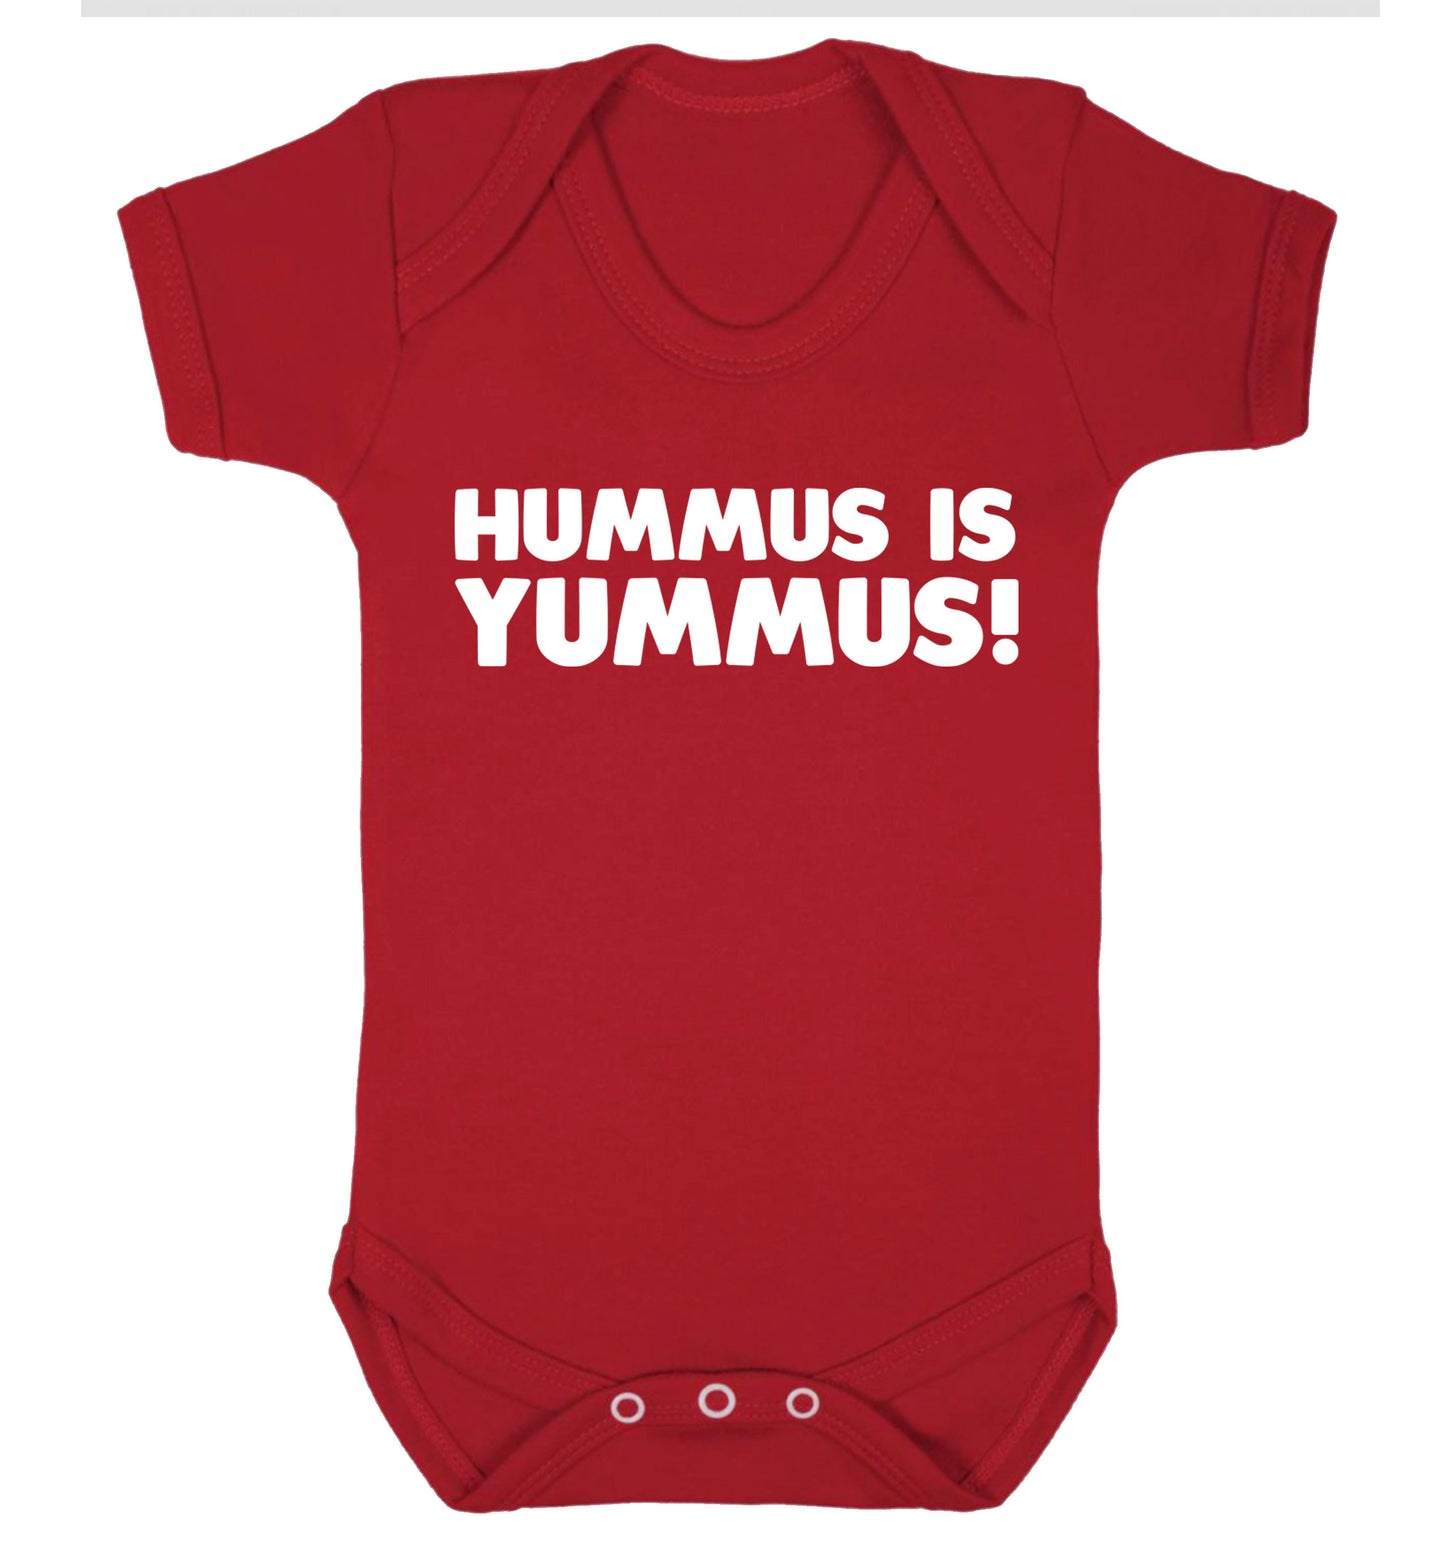 Hummus is Yummus  Baby Vest red 18-24 months